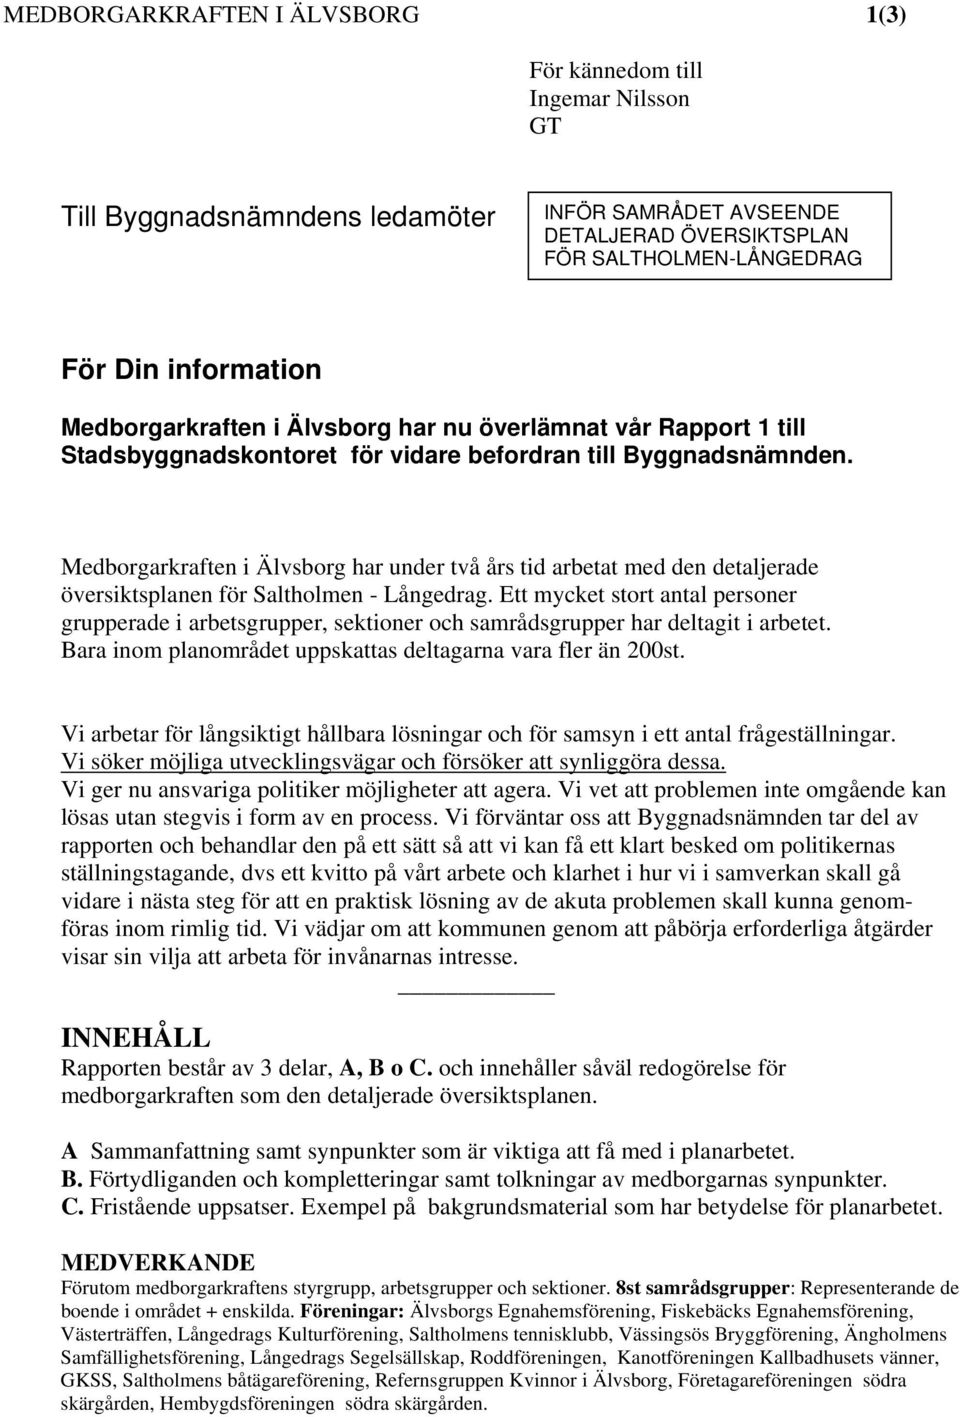 Medborgarkraften i Älvsborg har under två års tid arbetat med den detaljerade översiktsplanen för Saltholmen - Långedrag.